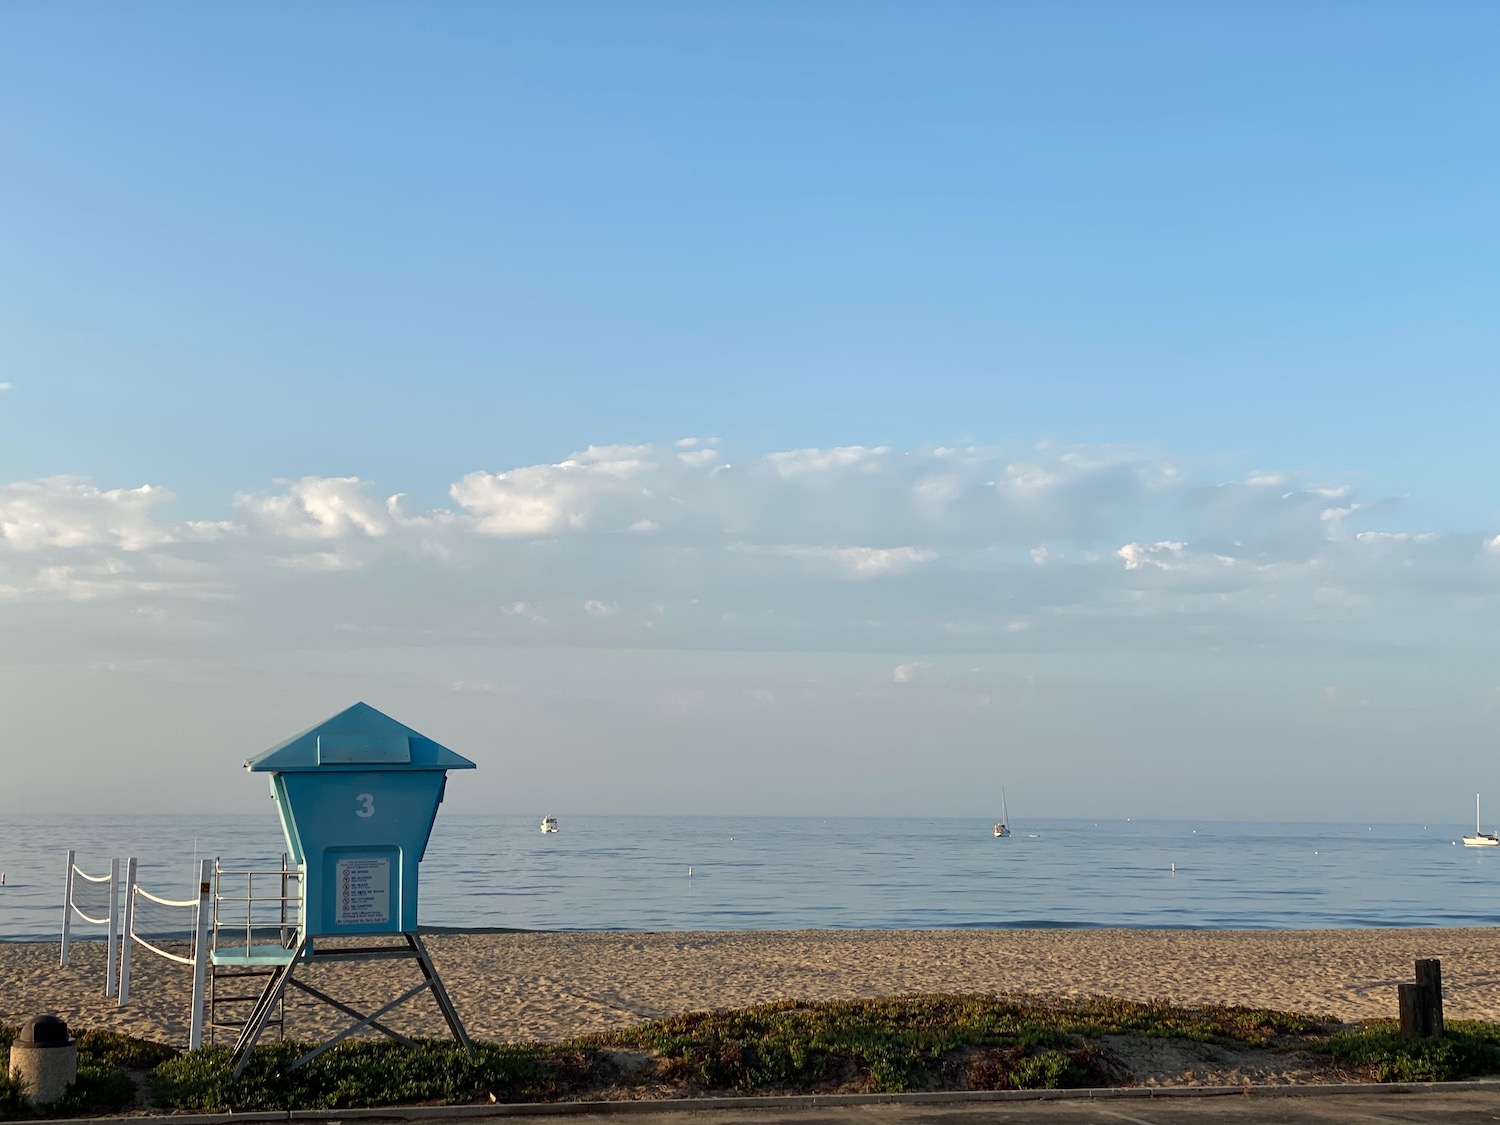 a blue lifeguard tower on a beach